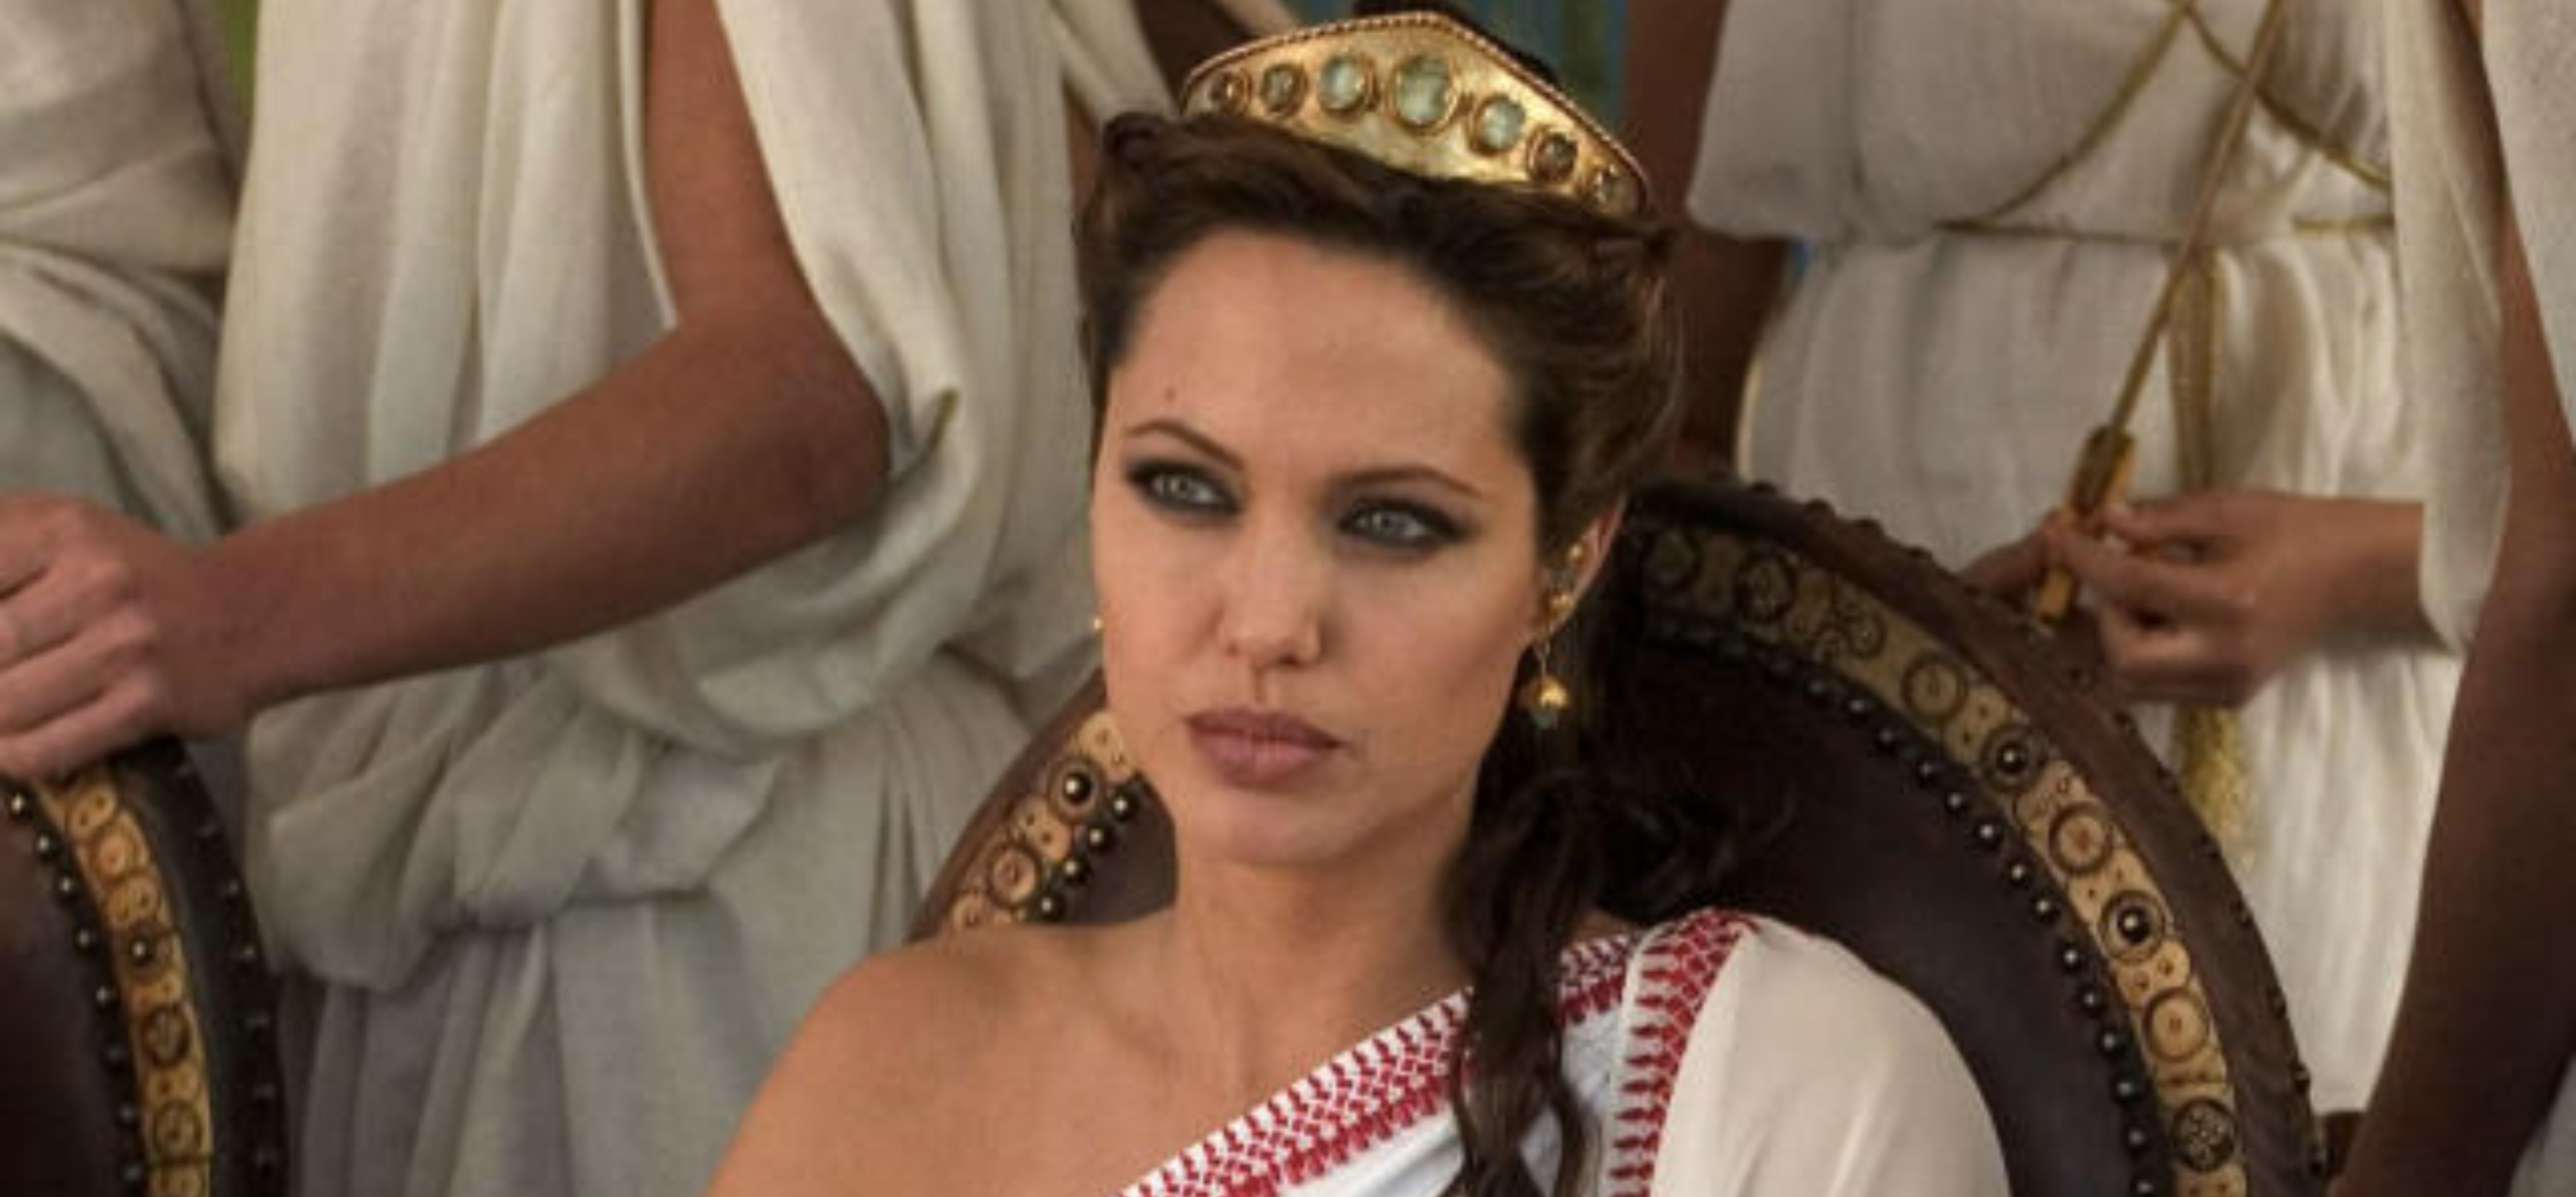 Неснятая «Клеопатра» с Анджелиной Джоли могла стать политическим триллером с обилием секса и крови